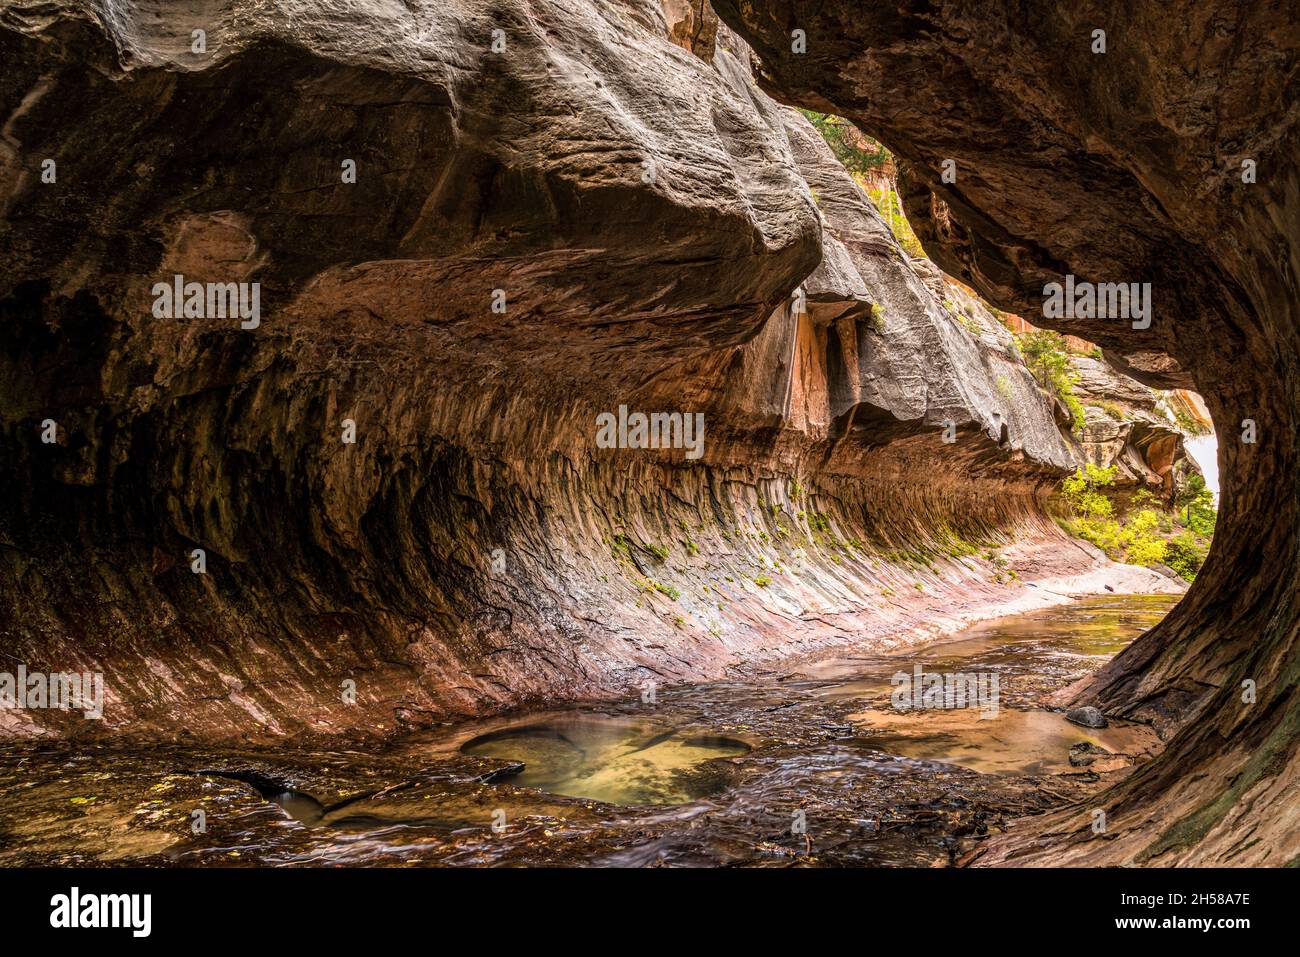 Magnifique site de la gorge du métro dans le parc national de Zion dans l'Utah, États-Unis Banque D'Images